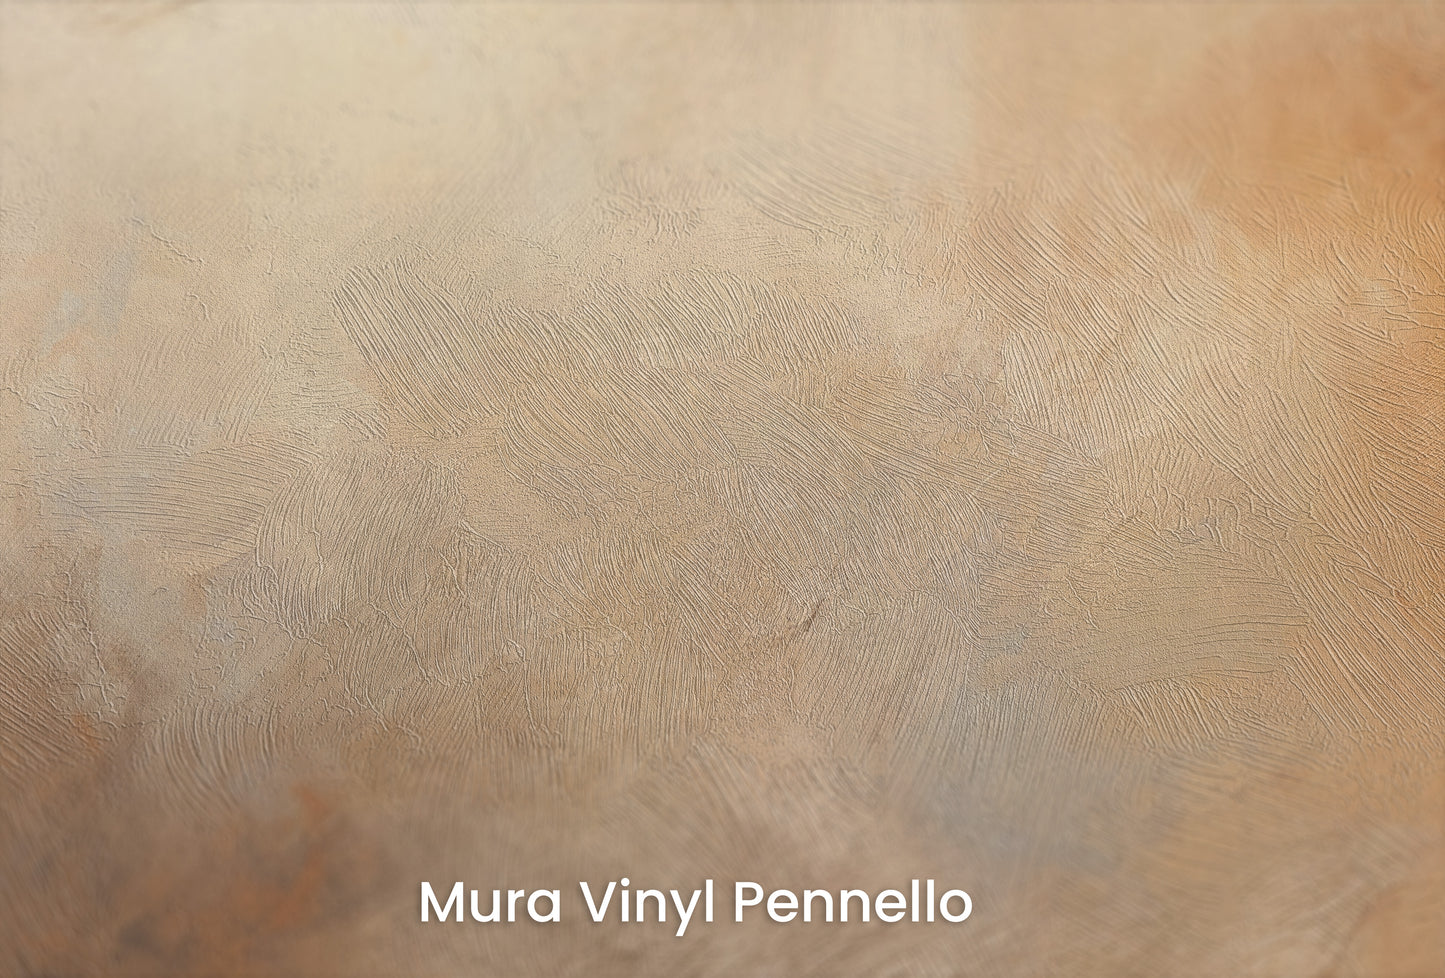 Zbliżenie na artystyczną fototapetę o nazwie DAWN'S TRANQUIL EMBRACE na podłożu Mura Vinyl Pennello - faktura pociągnięć pędzla malarskiego.